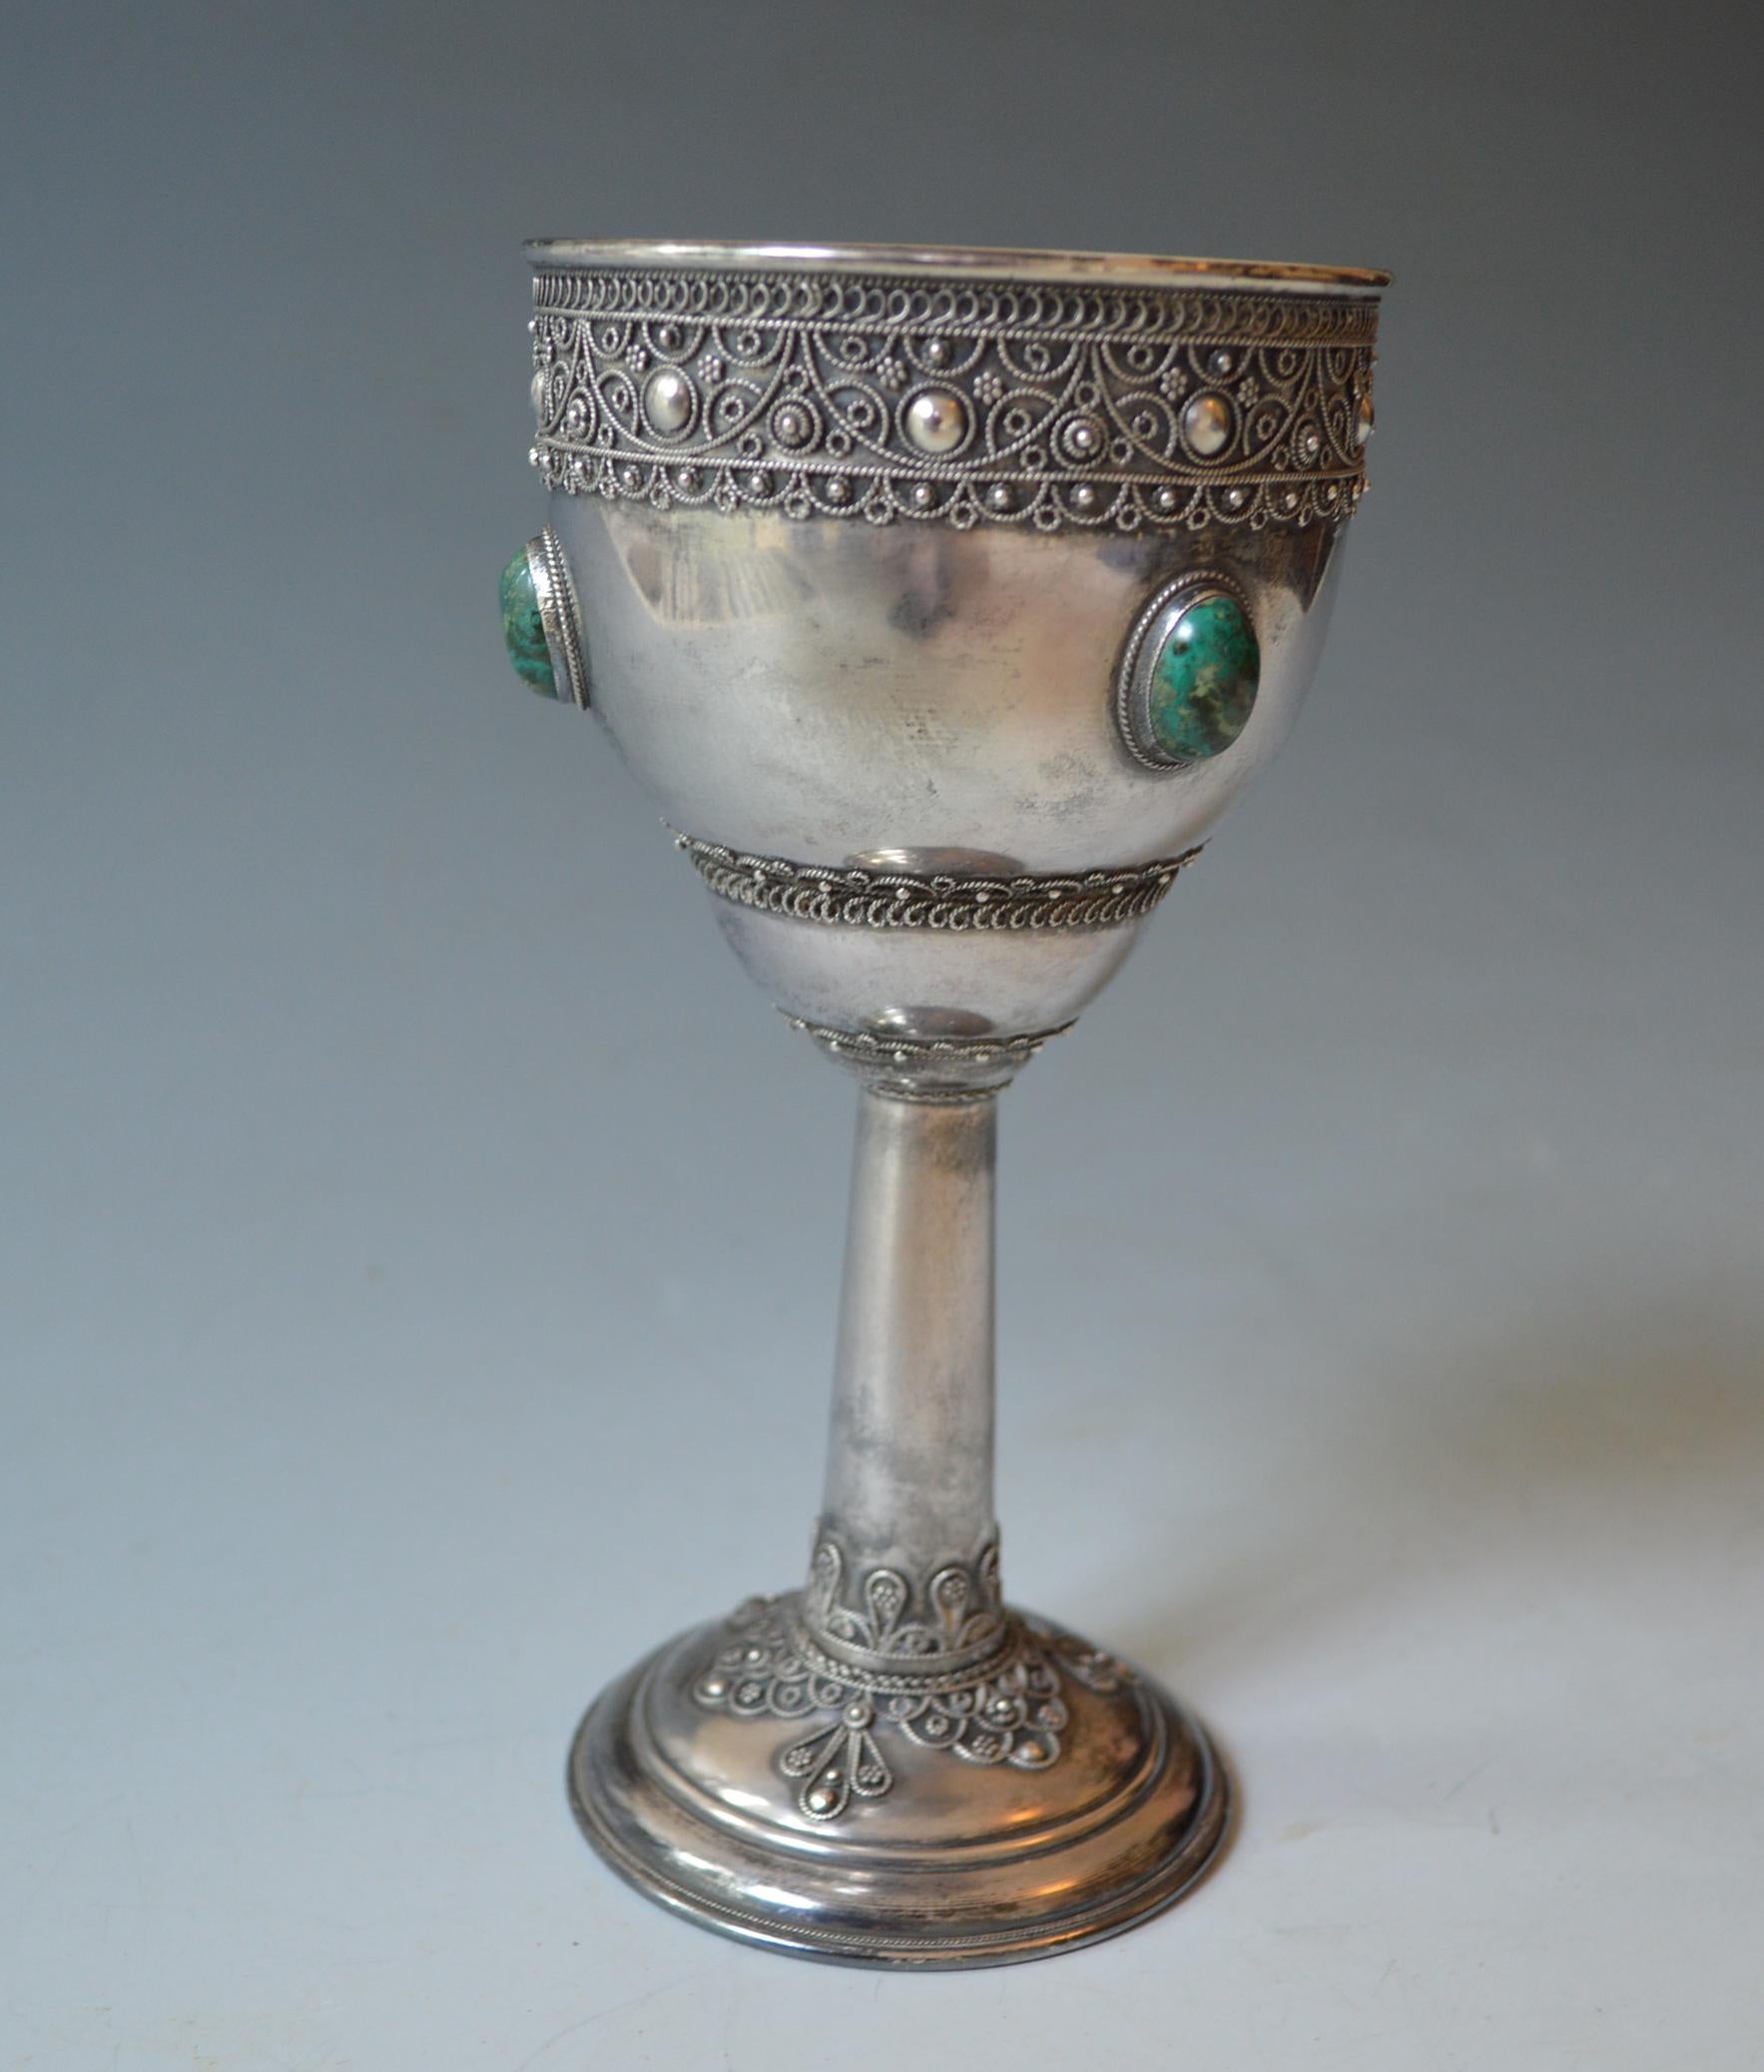 Feine Vintage Silber Kiddush Kelch mit filigranen hochgradigen Silber Malachit, Silber filigran Kiddush Kelch  Jerusalem jüdisch.
 
 